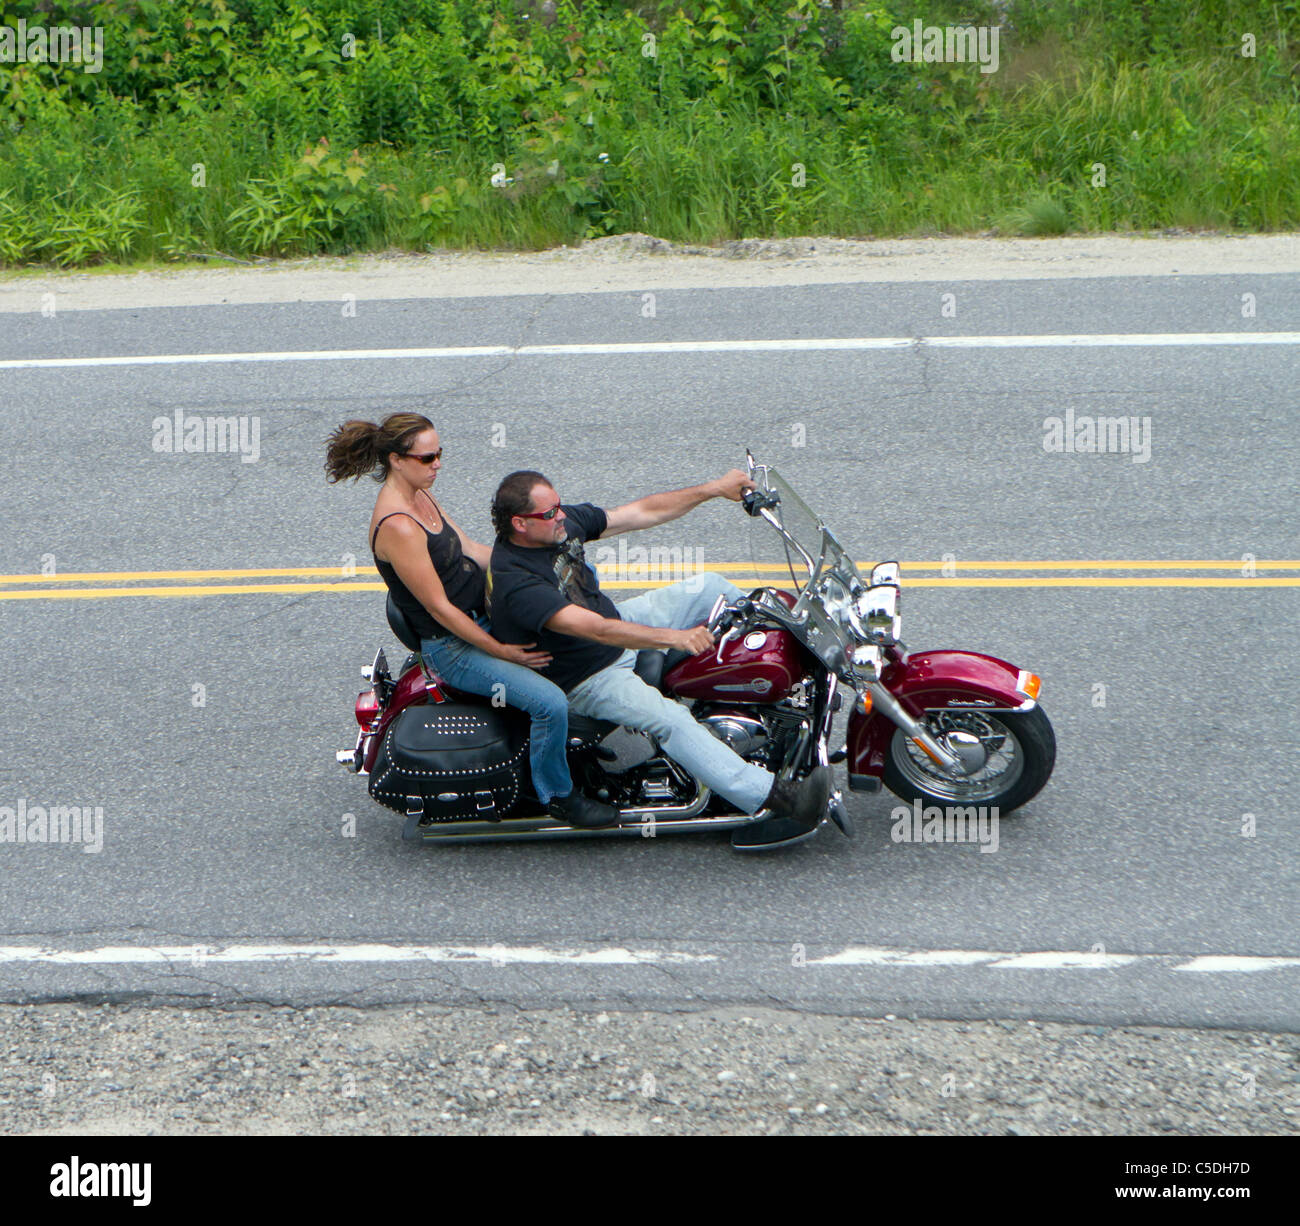 Fahrer und Beifahrer auf einem Motorrad Motorrad mit keine Helme. Stockfoto